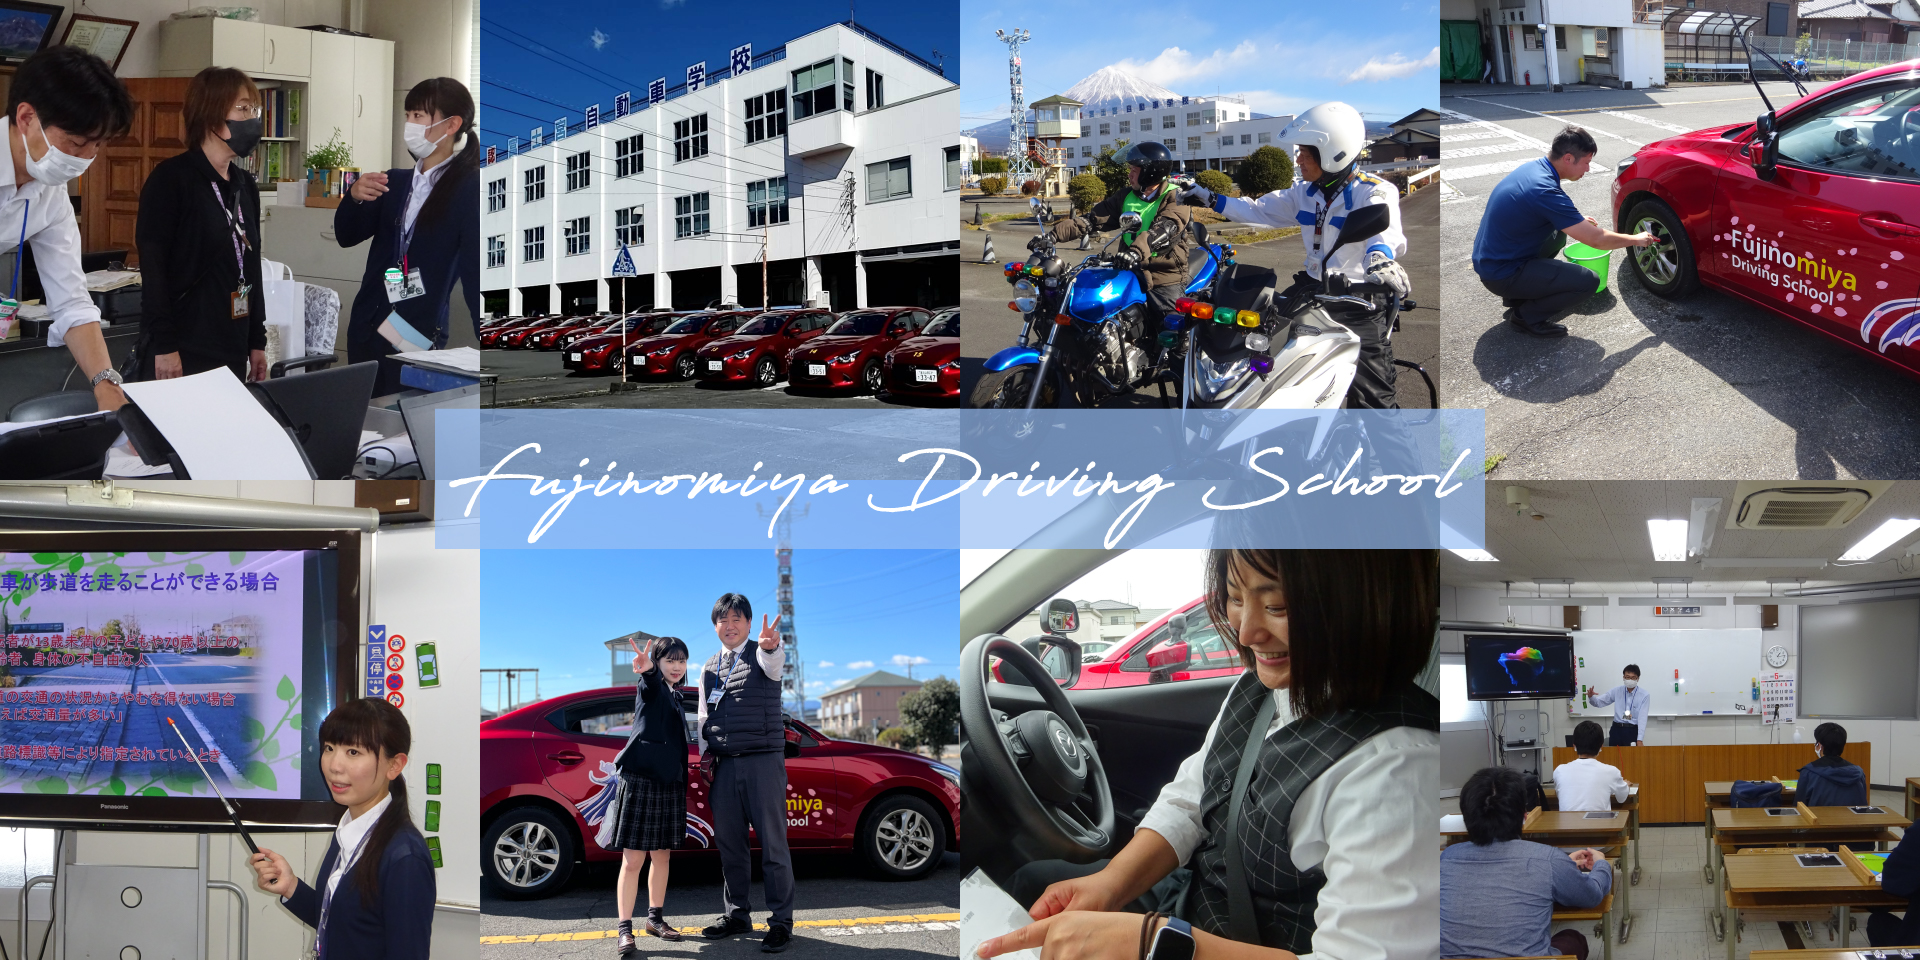 Fujinomiya Driving School